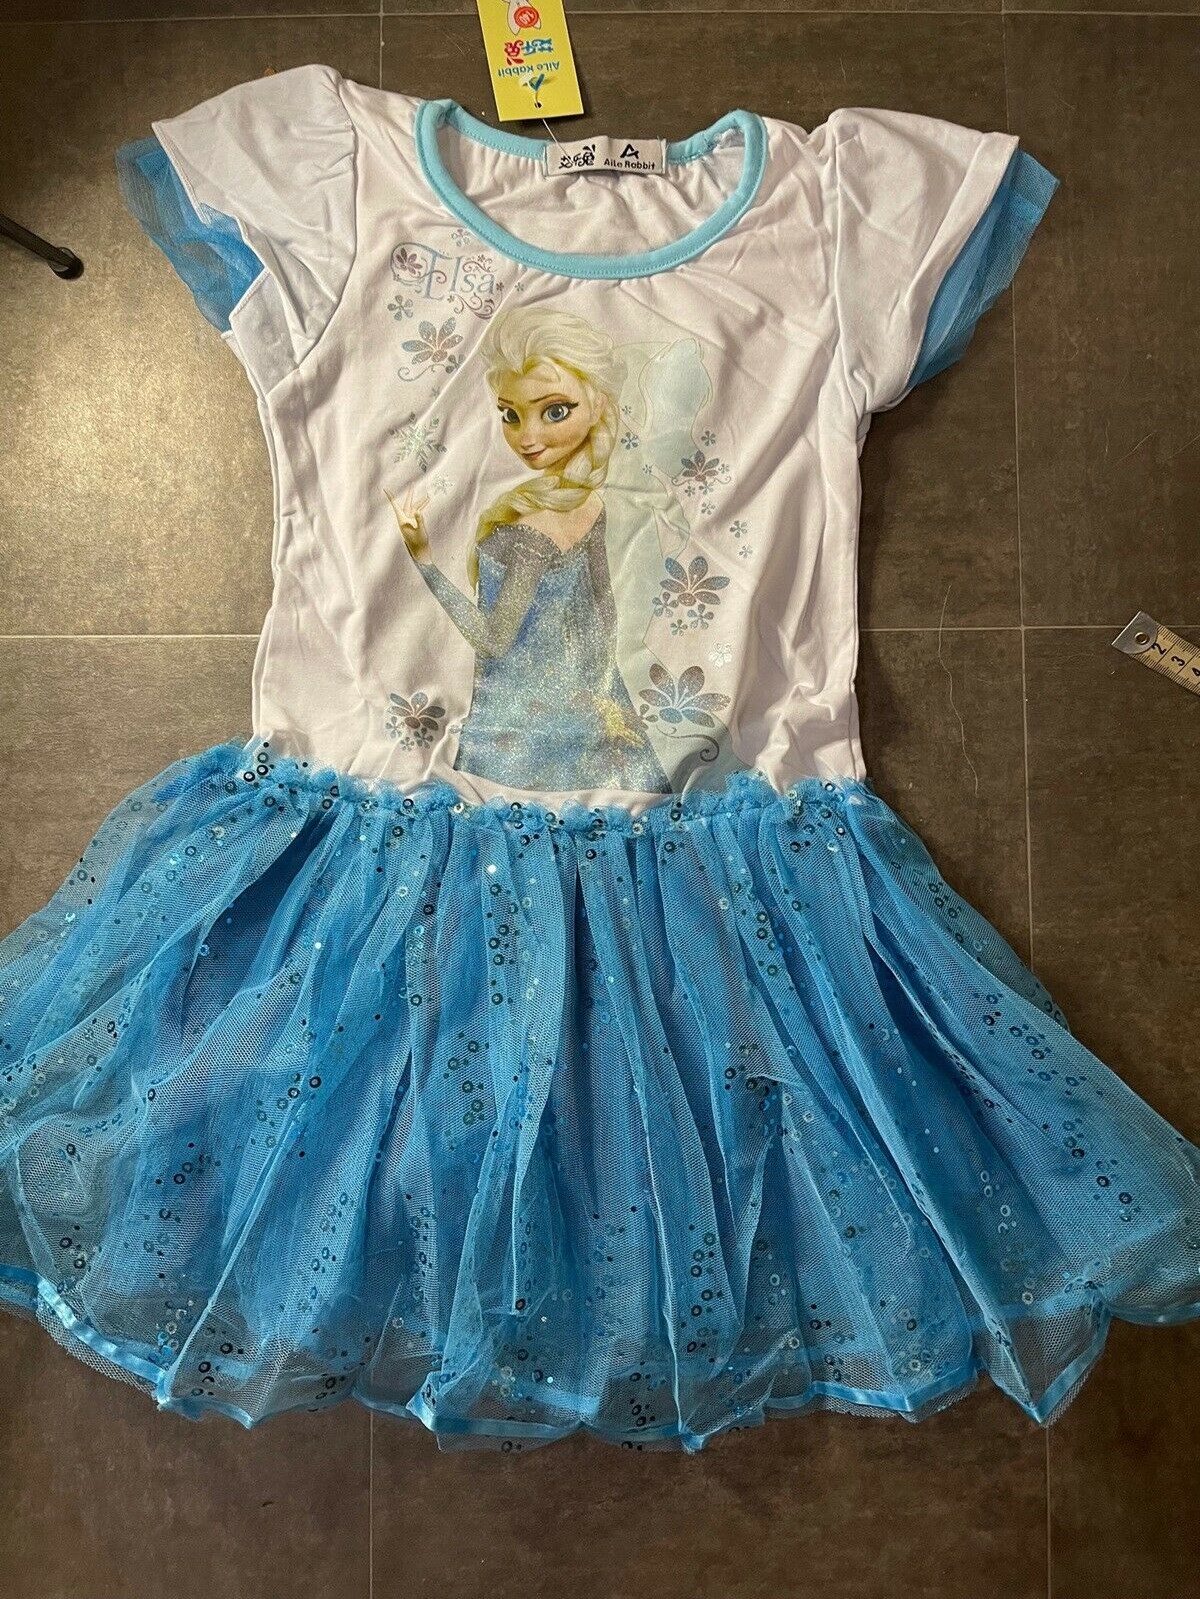 Den søde kjole med motivet af Elsa fra filmen ’Frost’ er aldrig blevet brugt. Den er i størrelse 128 og sælges for 99 kroner. Det er Natasja i Højbjerg, der sælger kjolen, og hun sender den gerne til dig.